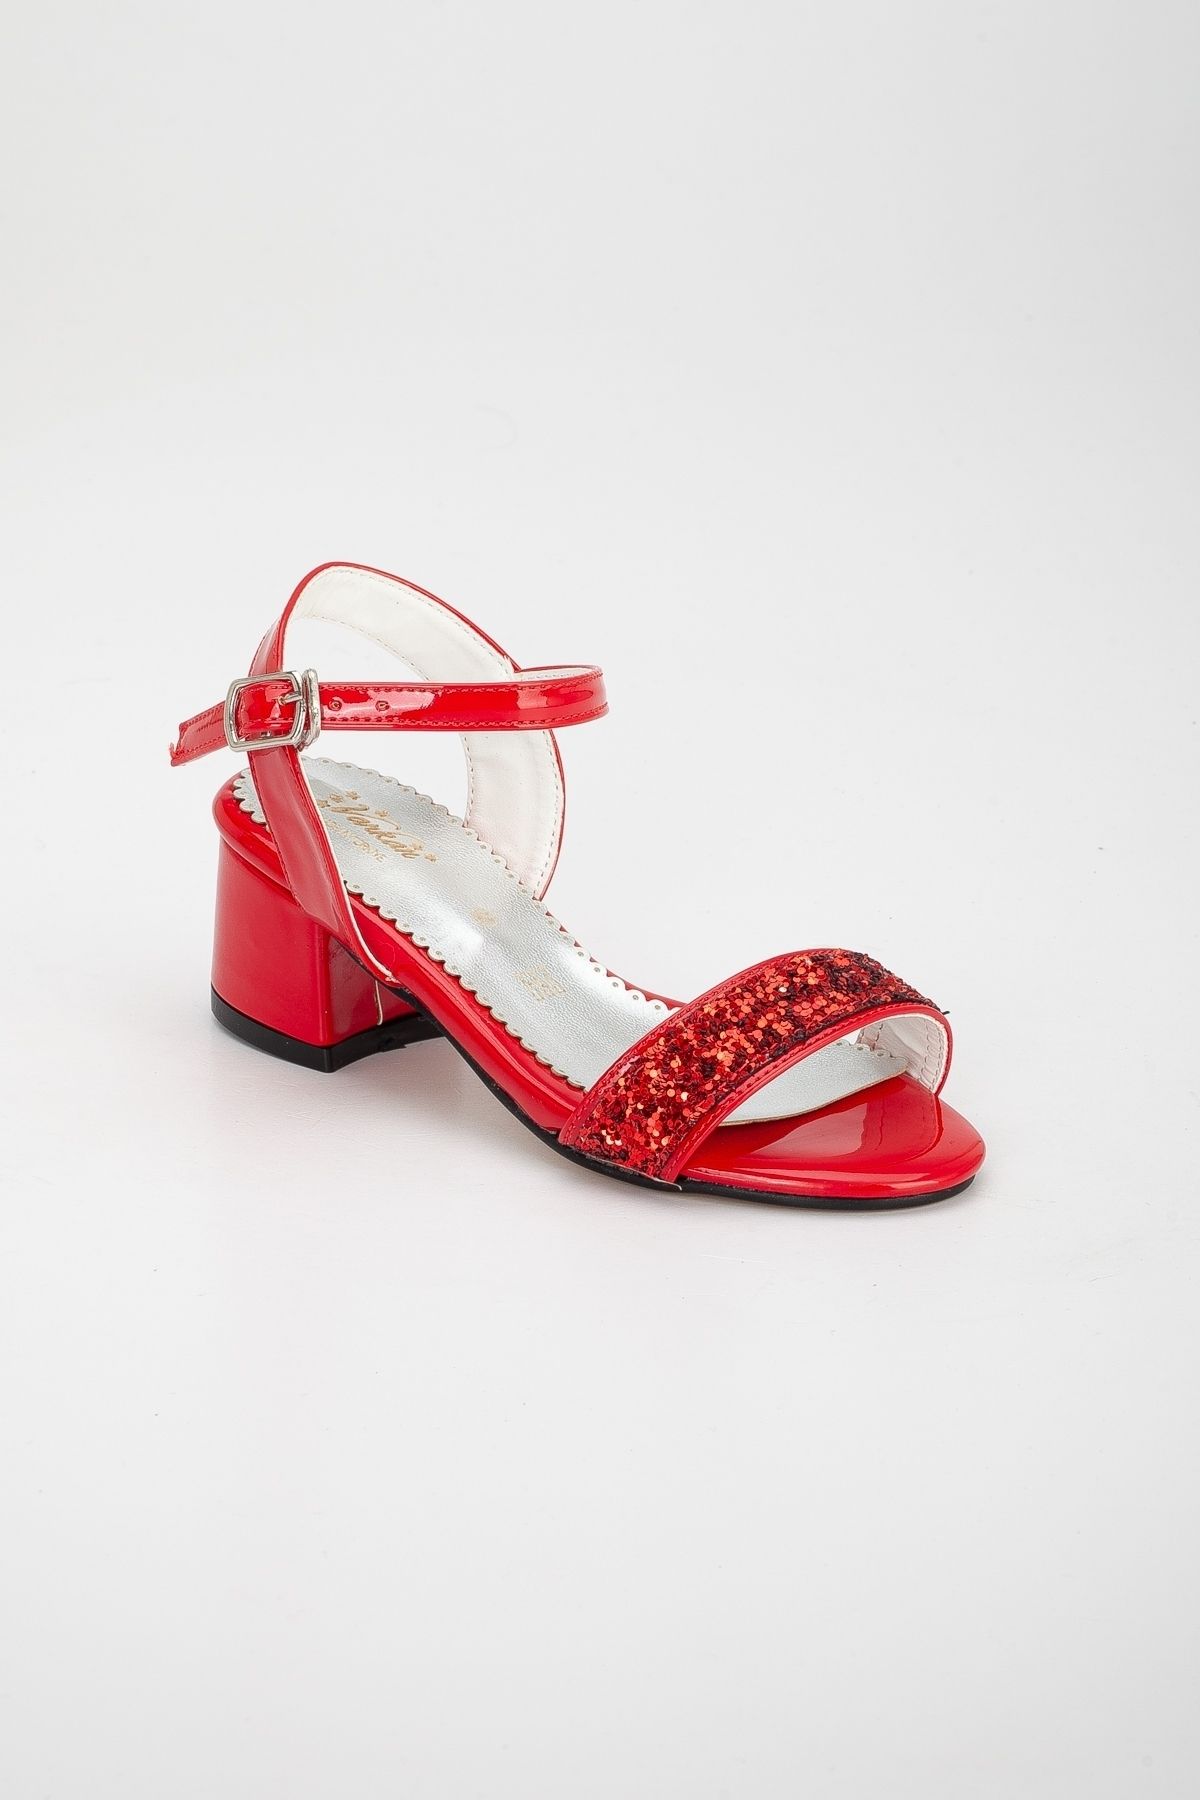 Genel Markalar Emela Shoes Kırmızı Suni Deri Çocuk Abiye Açık Topuklu Ayakkabı